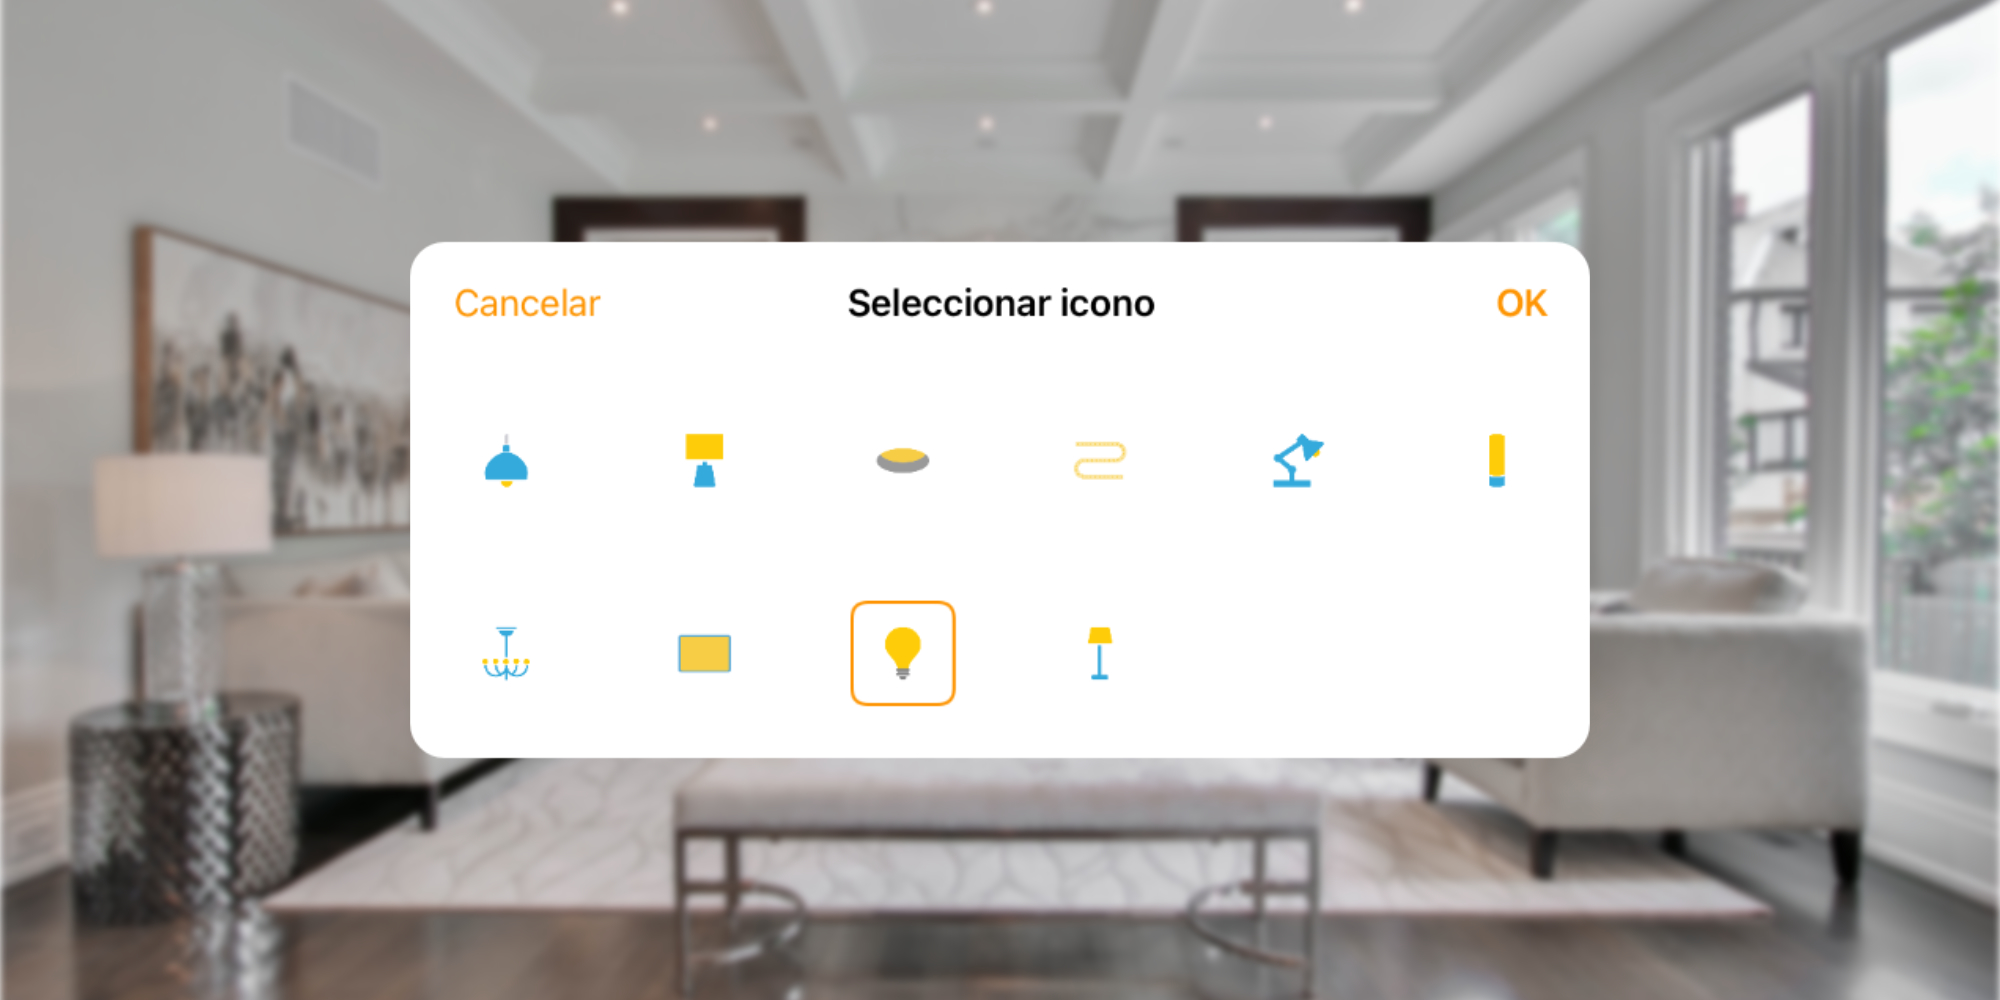 Así podemos personalizar los iconos de los accesorios HomeKit de la app Casa de nuestro iPhone, iPad o Mac